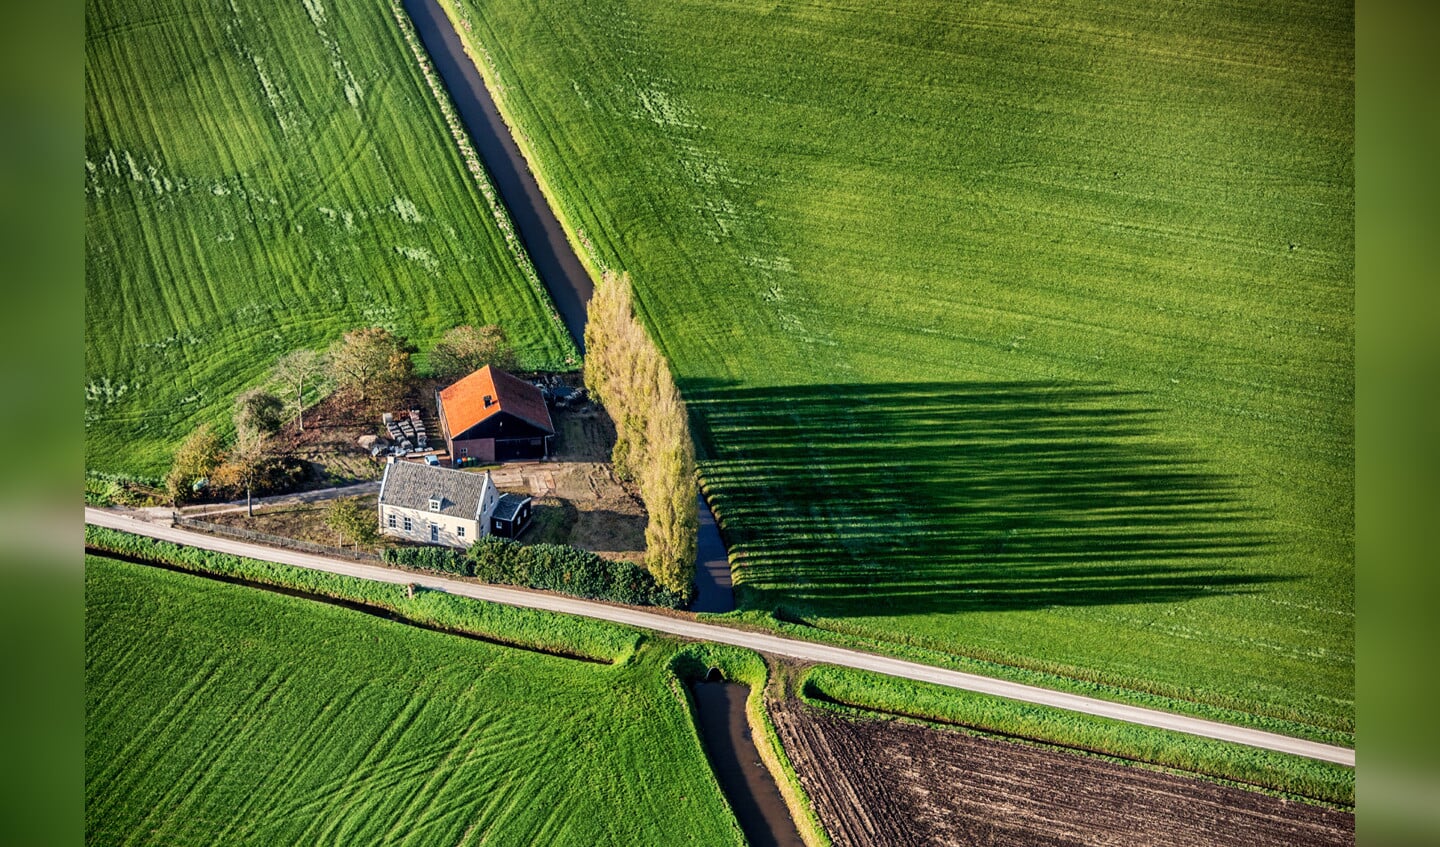 Boerderij in het land van Maas en Waal.